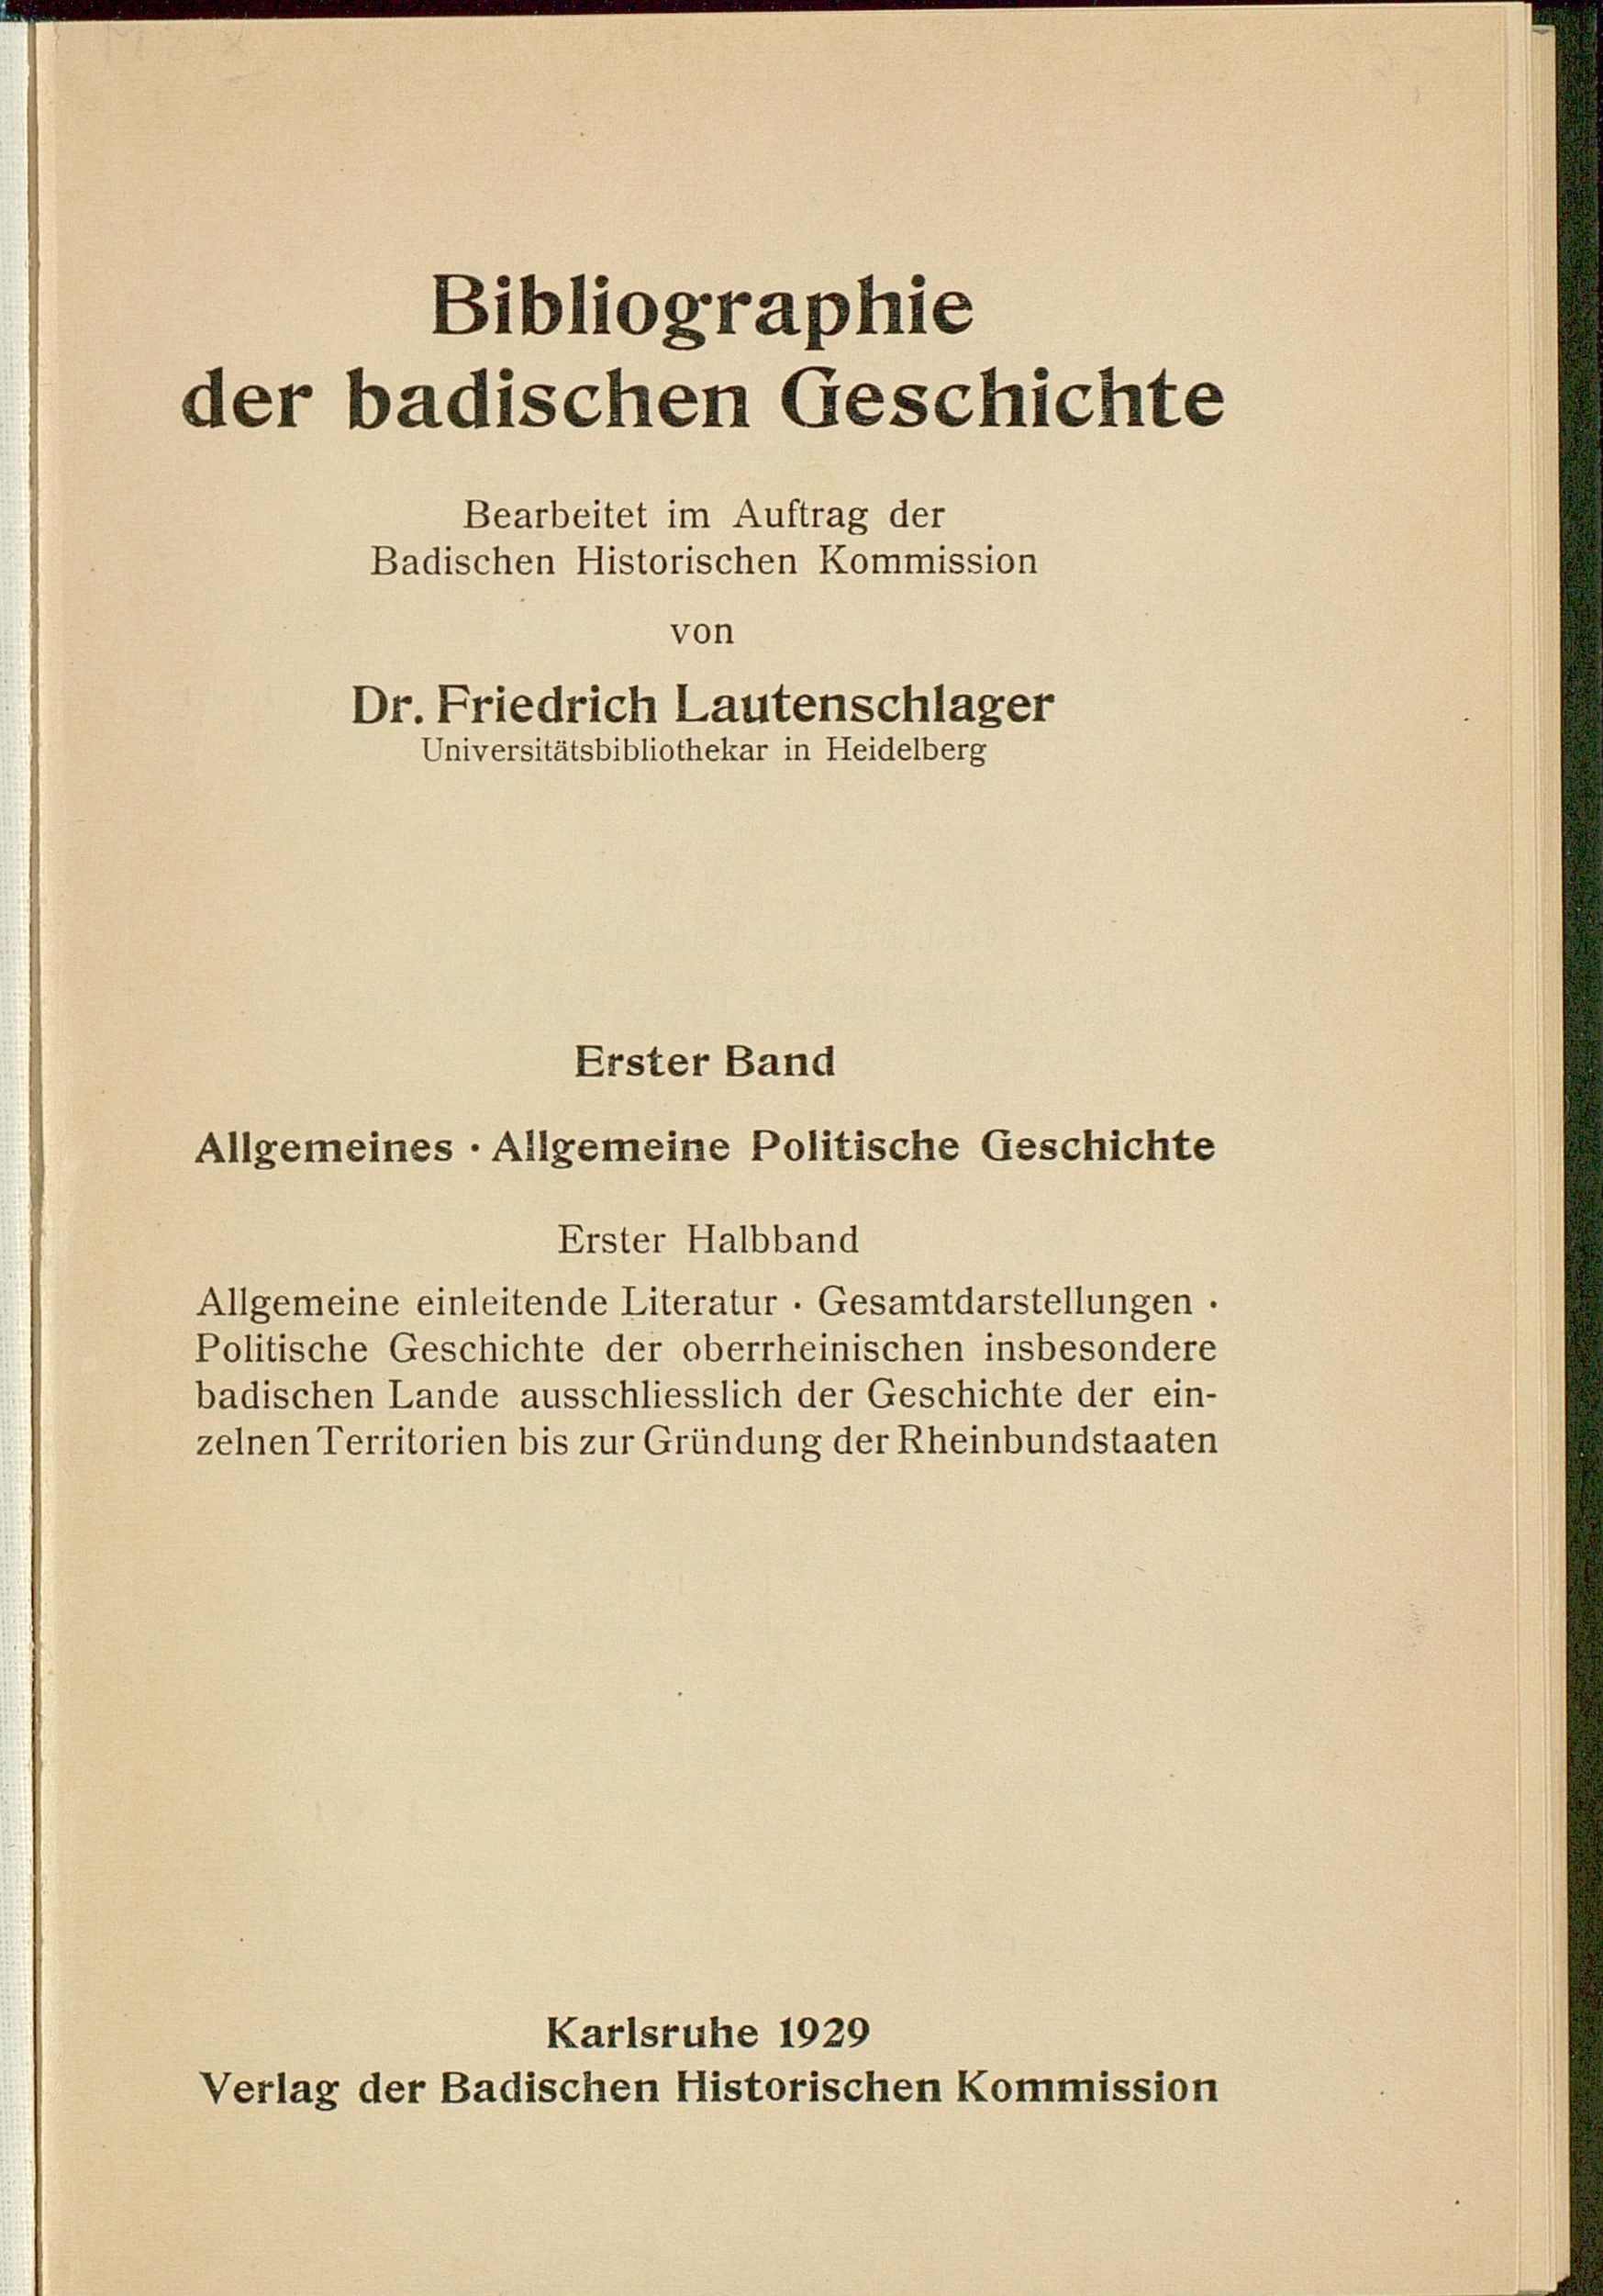 Die Abbildung zeigt die Titelseite der Bibliographie der badischen Geschichte, die 1929 von Friedrich Lautenschlager begründet wurde.